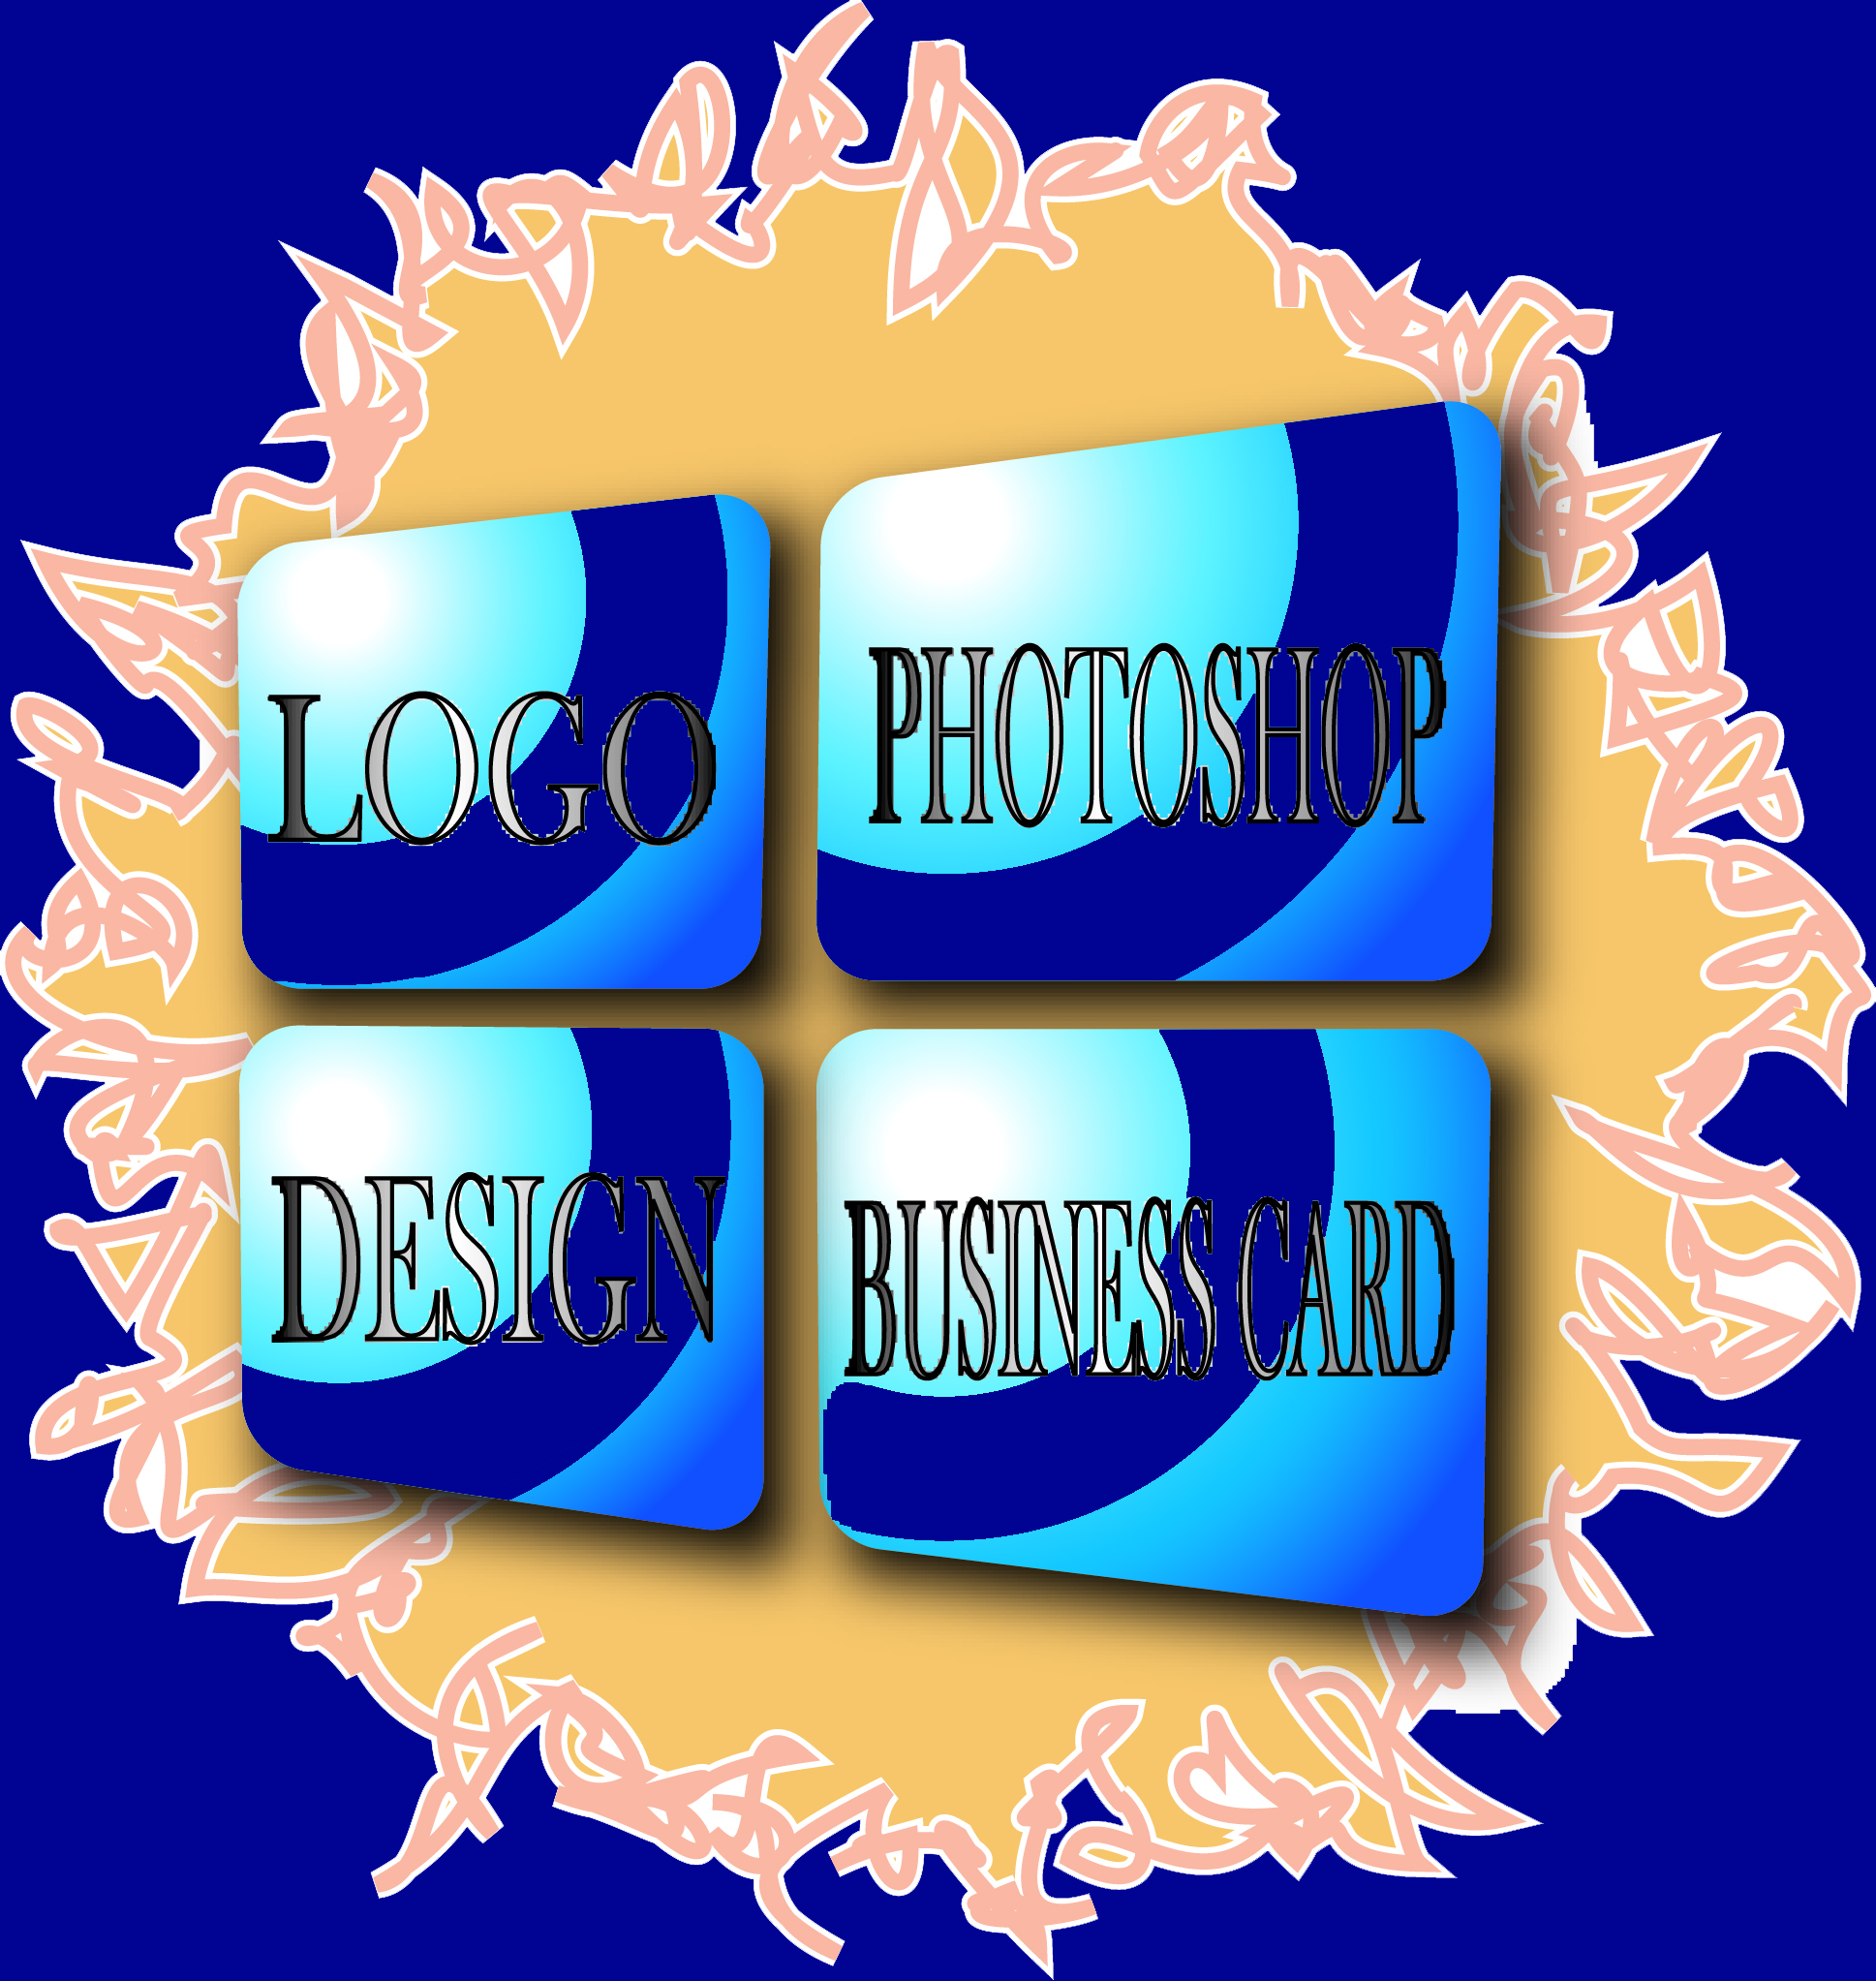 Graphics Design Visiting Card Designer for Business.